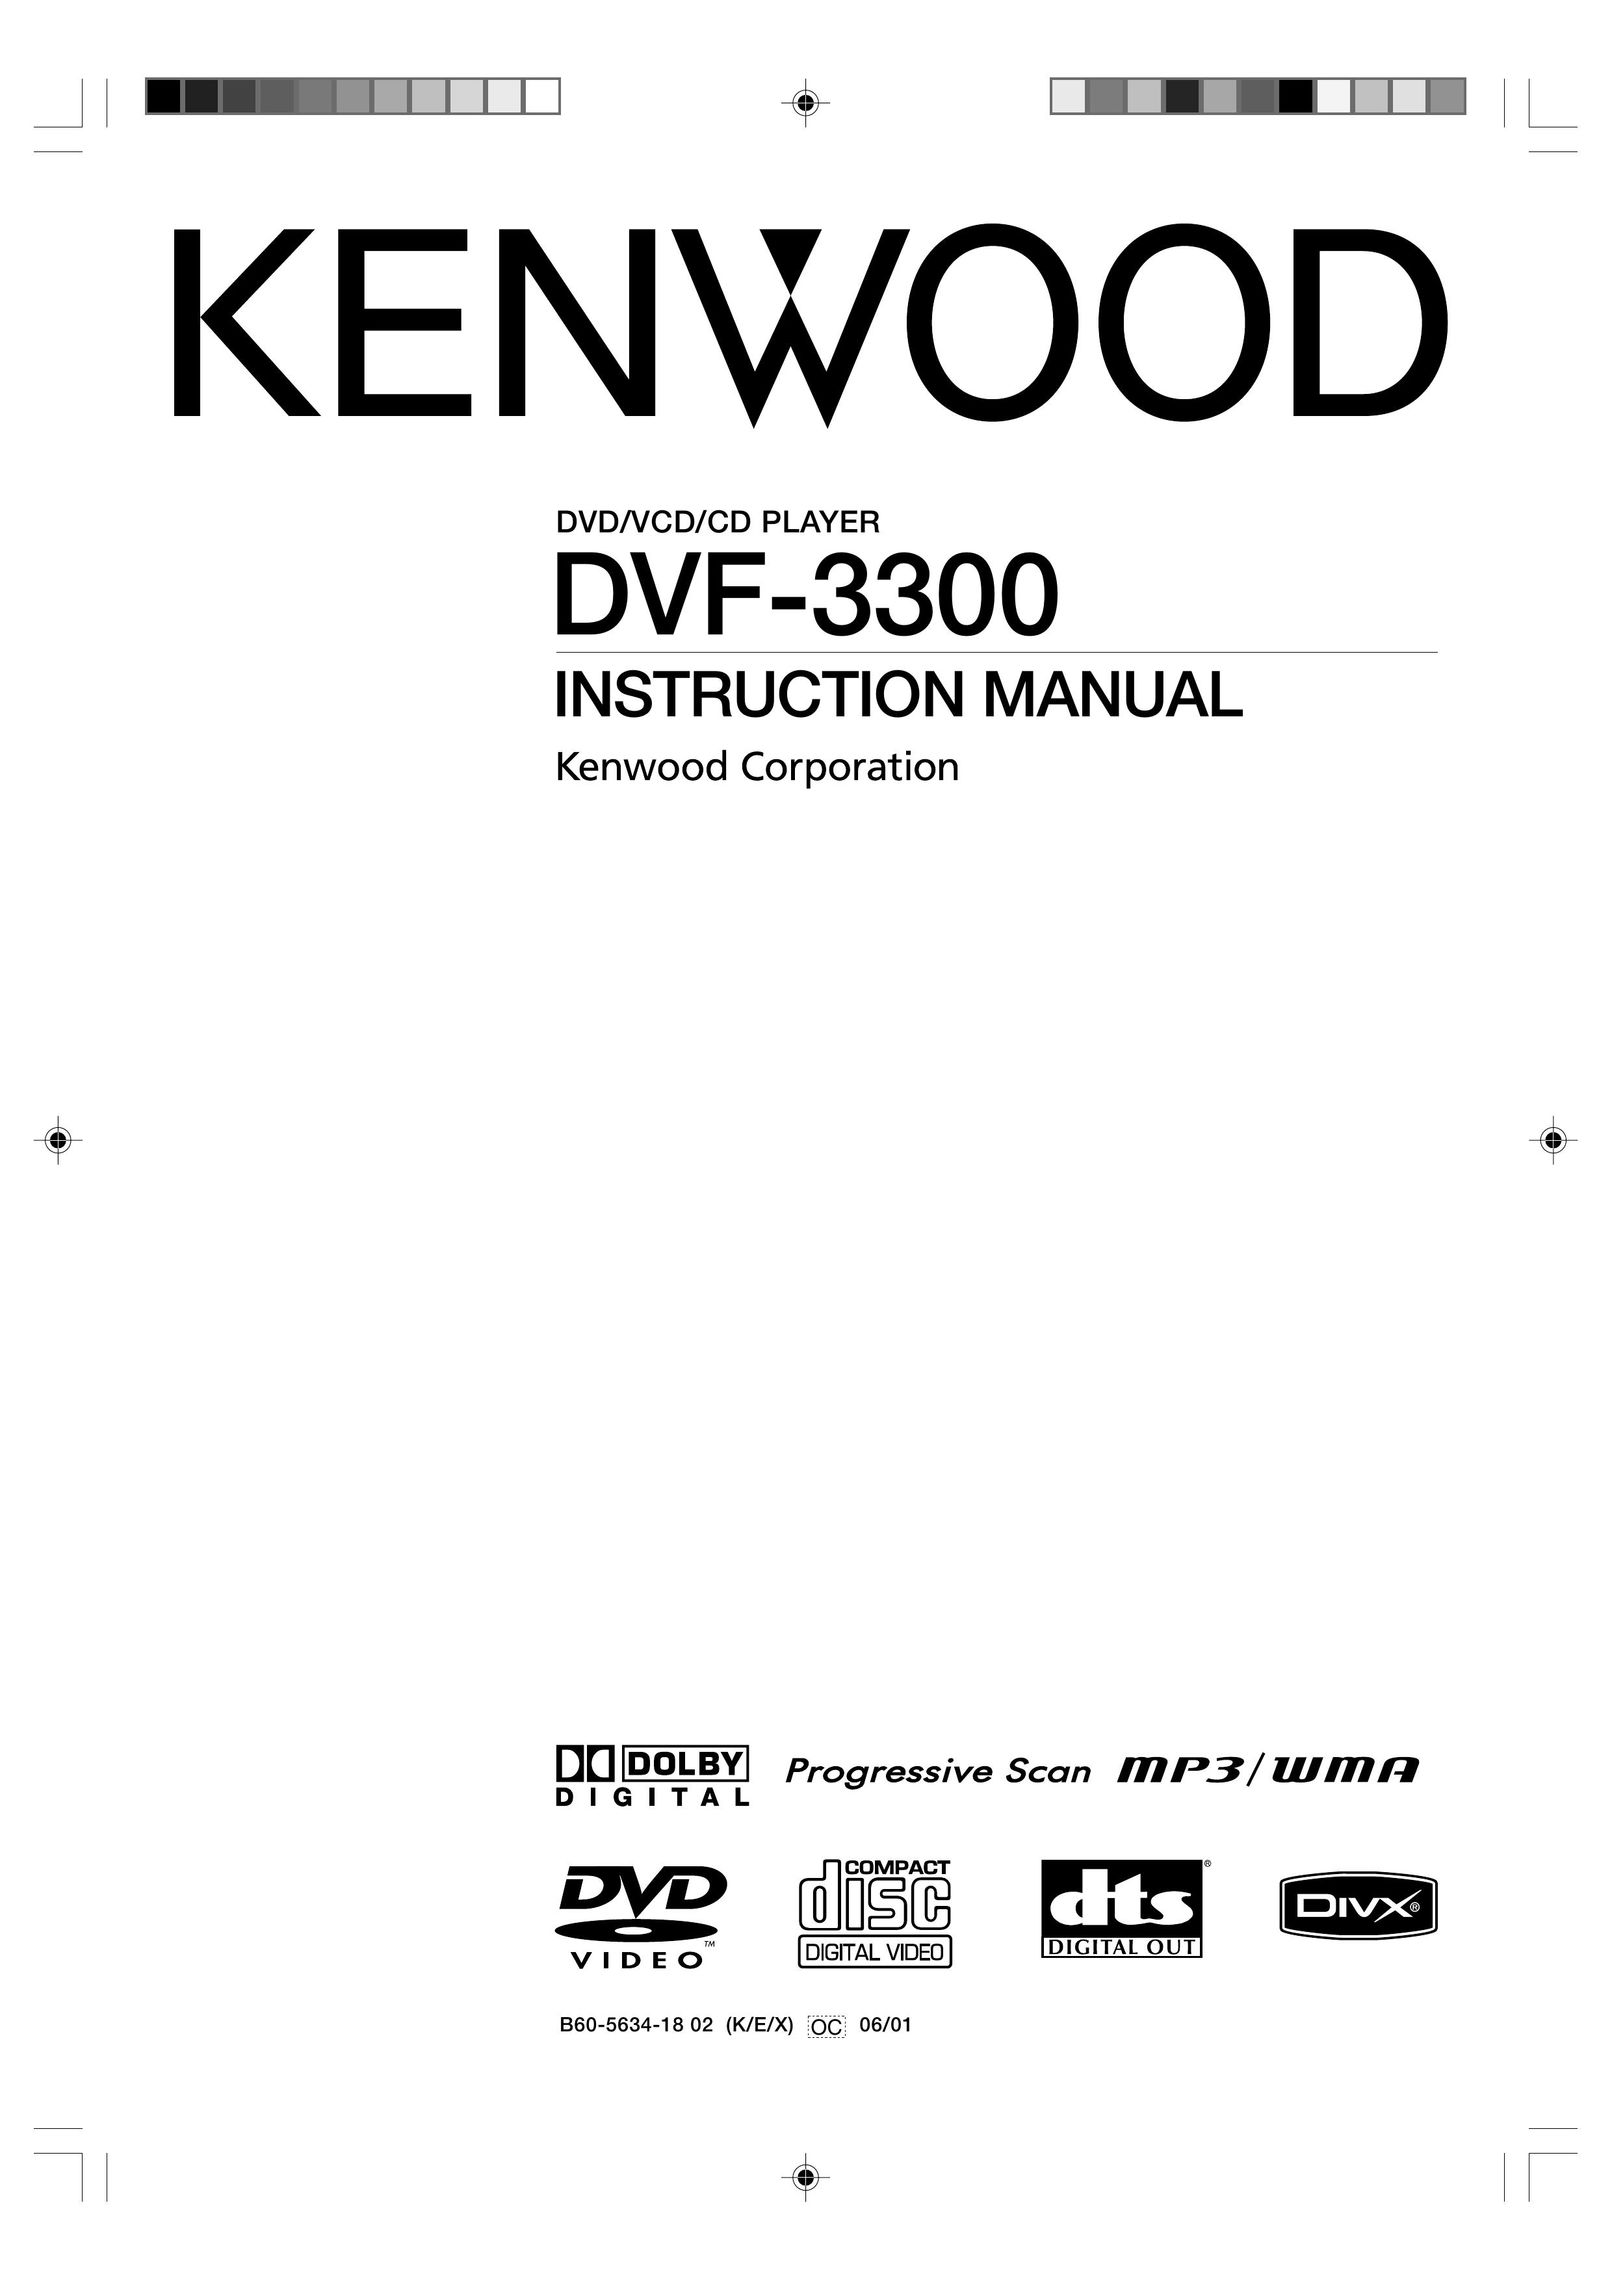 Kenwood DVF-3300 DVD Player User Manual